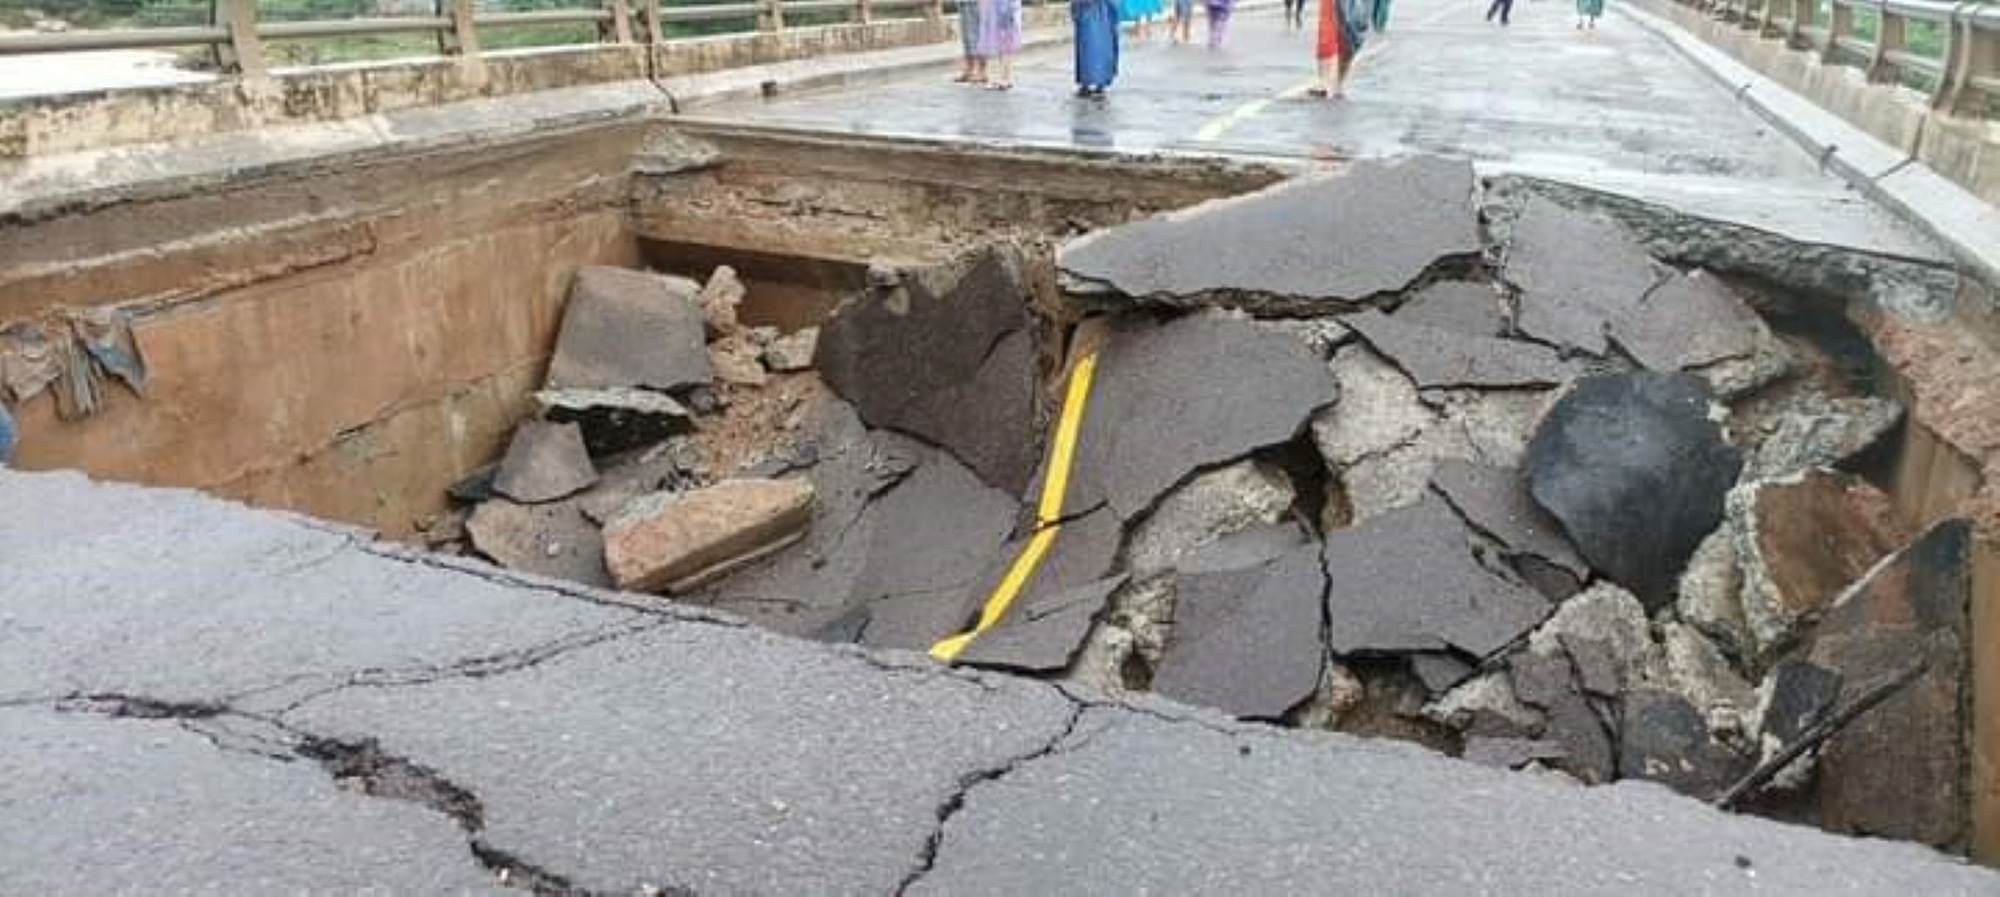 Cầu sập, giao thông qua Bình Định đi Phú Yên, các tỉnh Tây Nguyên bị tê liệt - Ảnh 3.